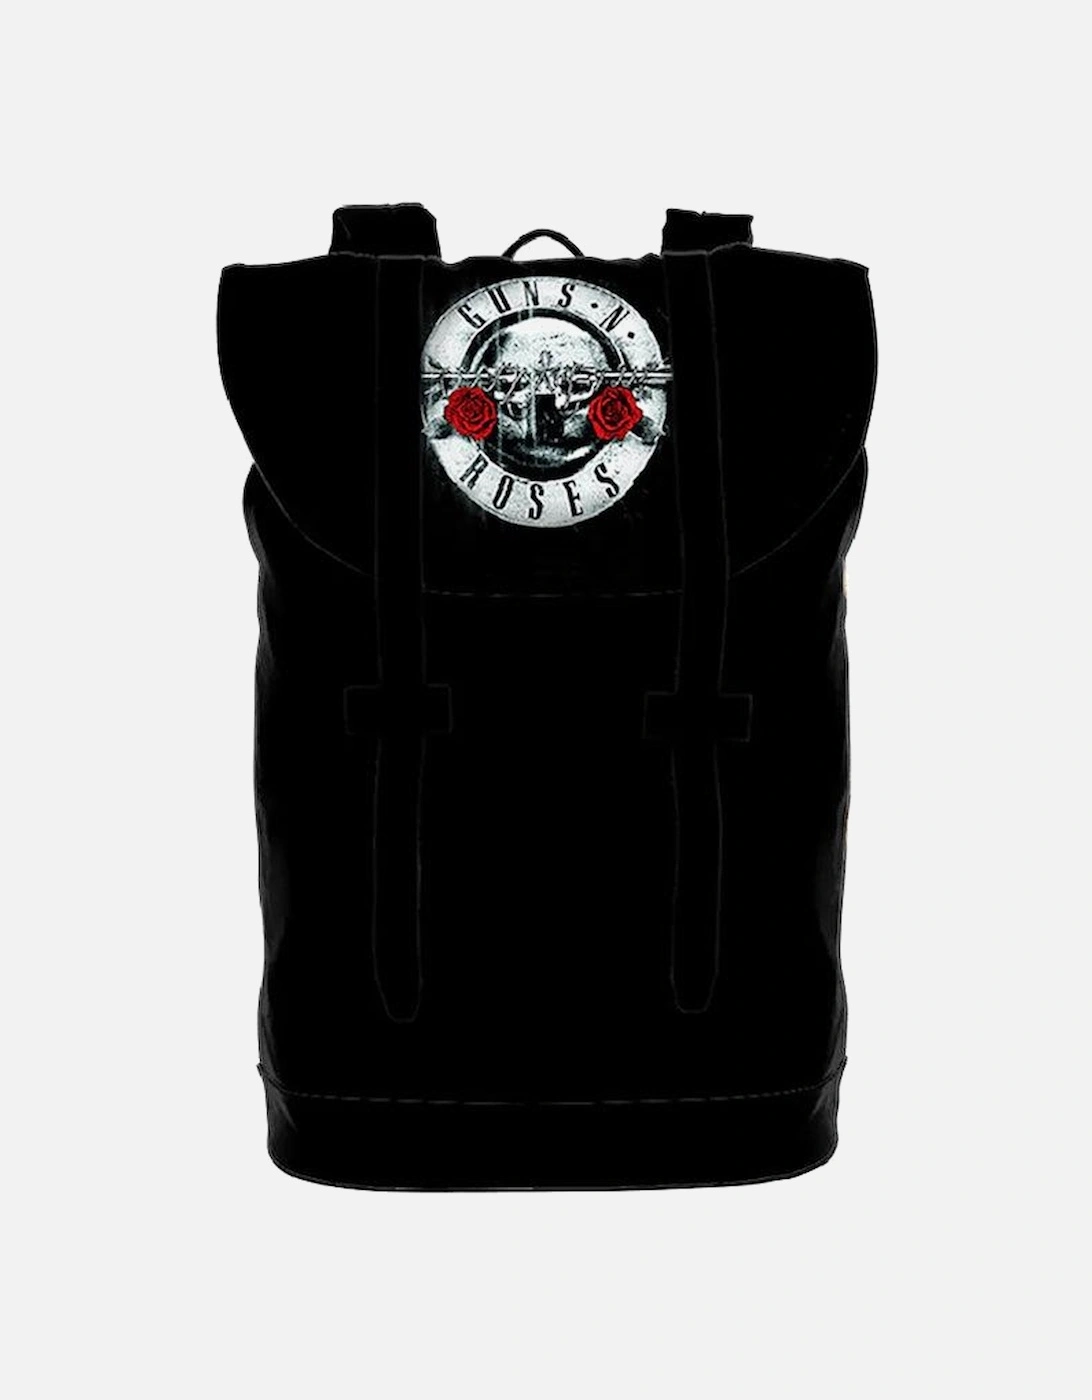 Guns N Roses Logo Backpack, 2 of 1